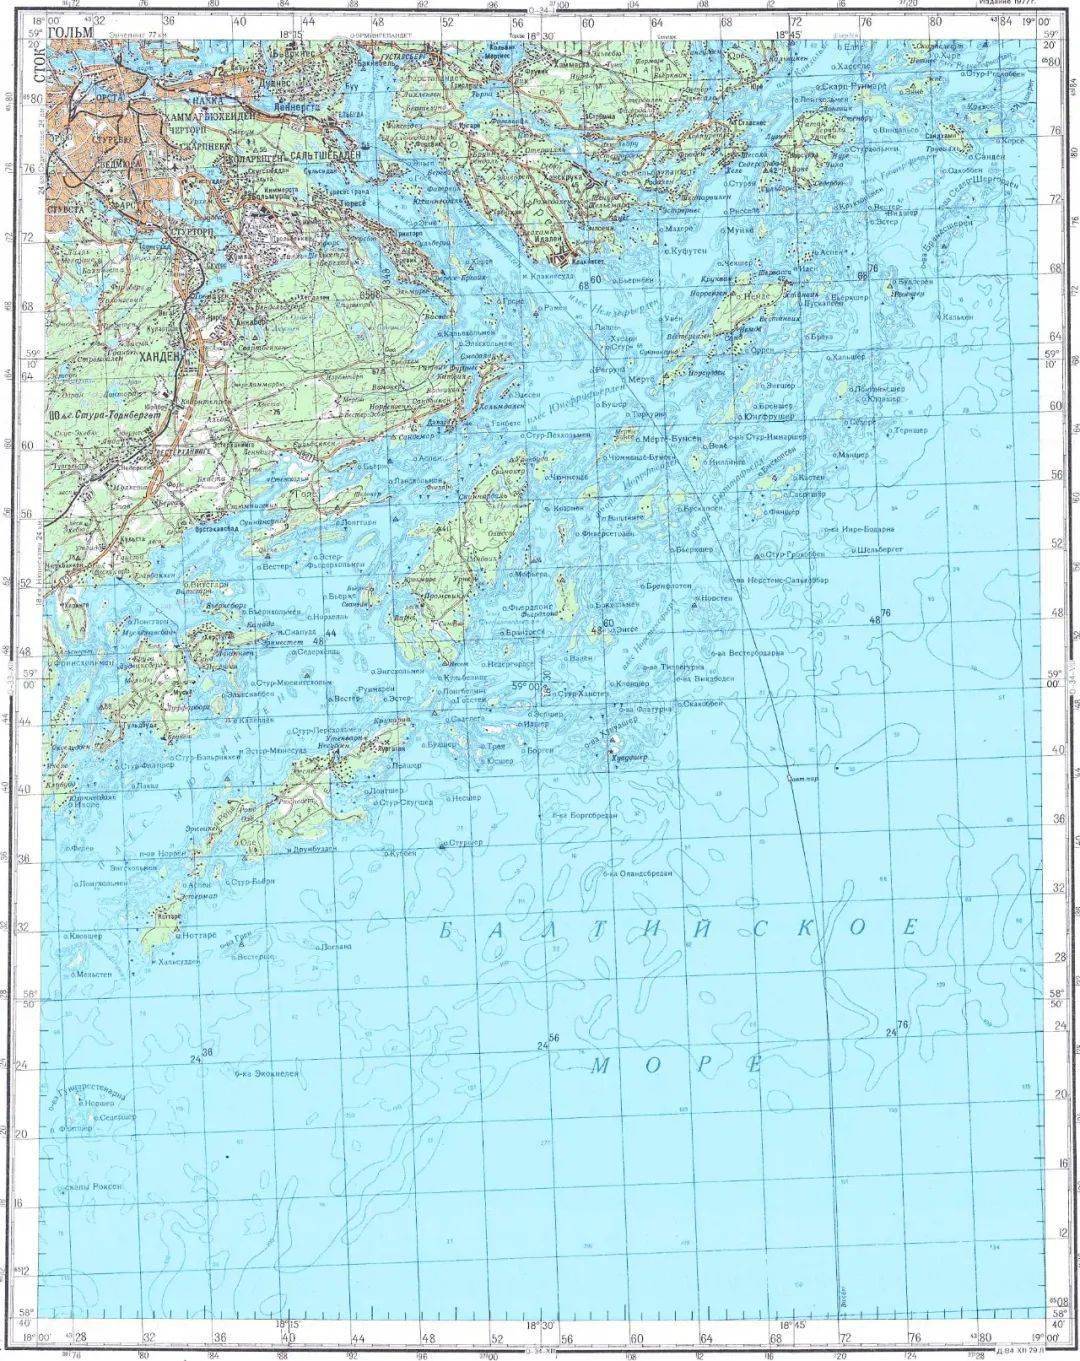 世界地图高清放大竖版图片